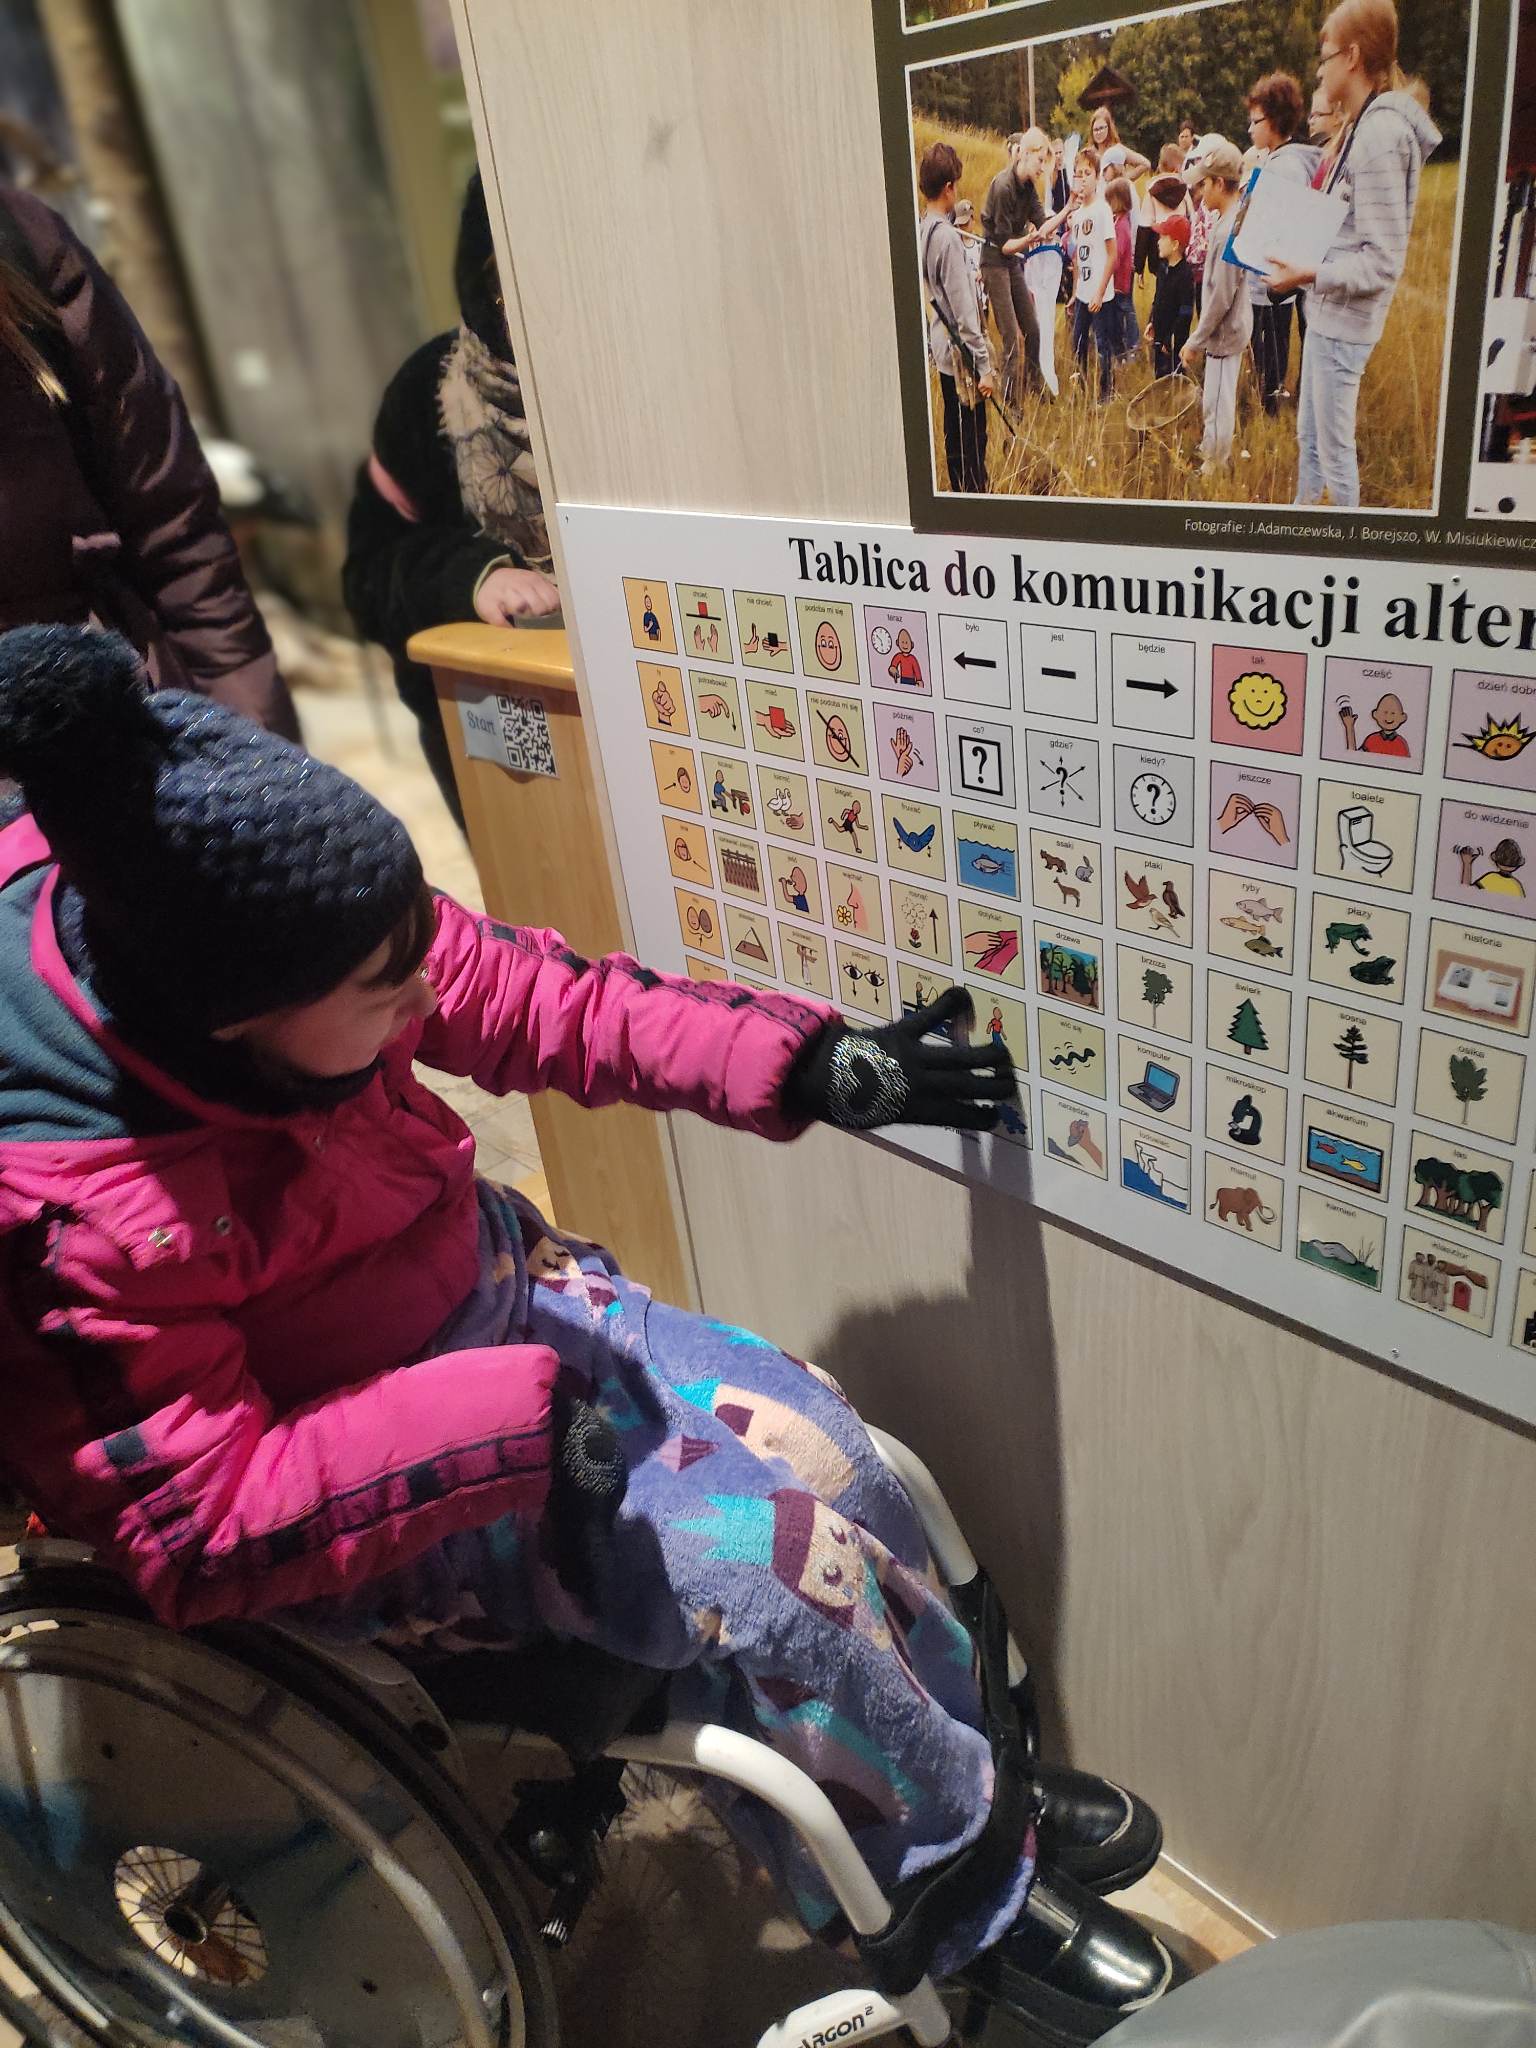 Kobieta na wózku inwalidzkim wskazuje na jeden z obrazków na tablicy do komunikacji alternatywnej.